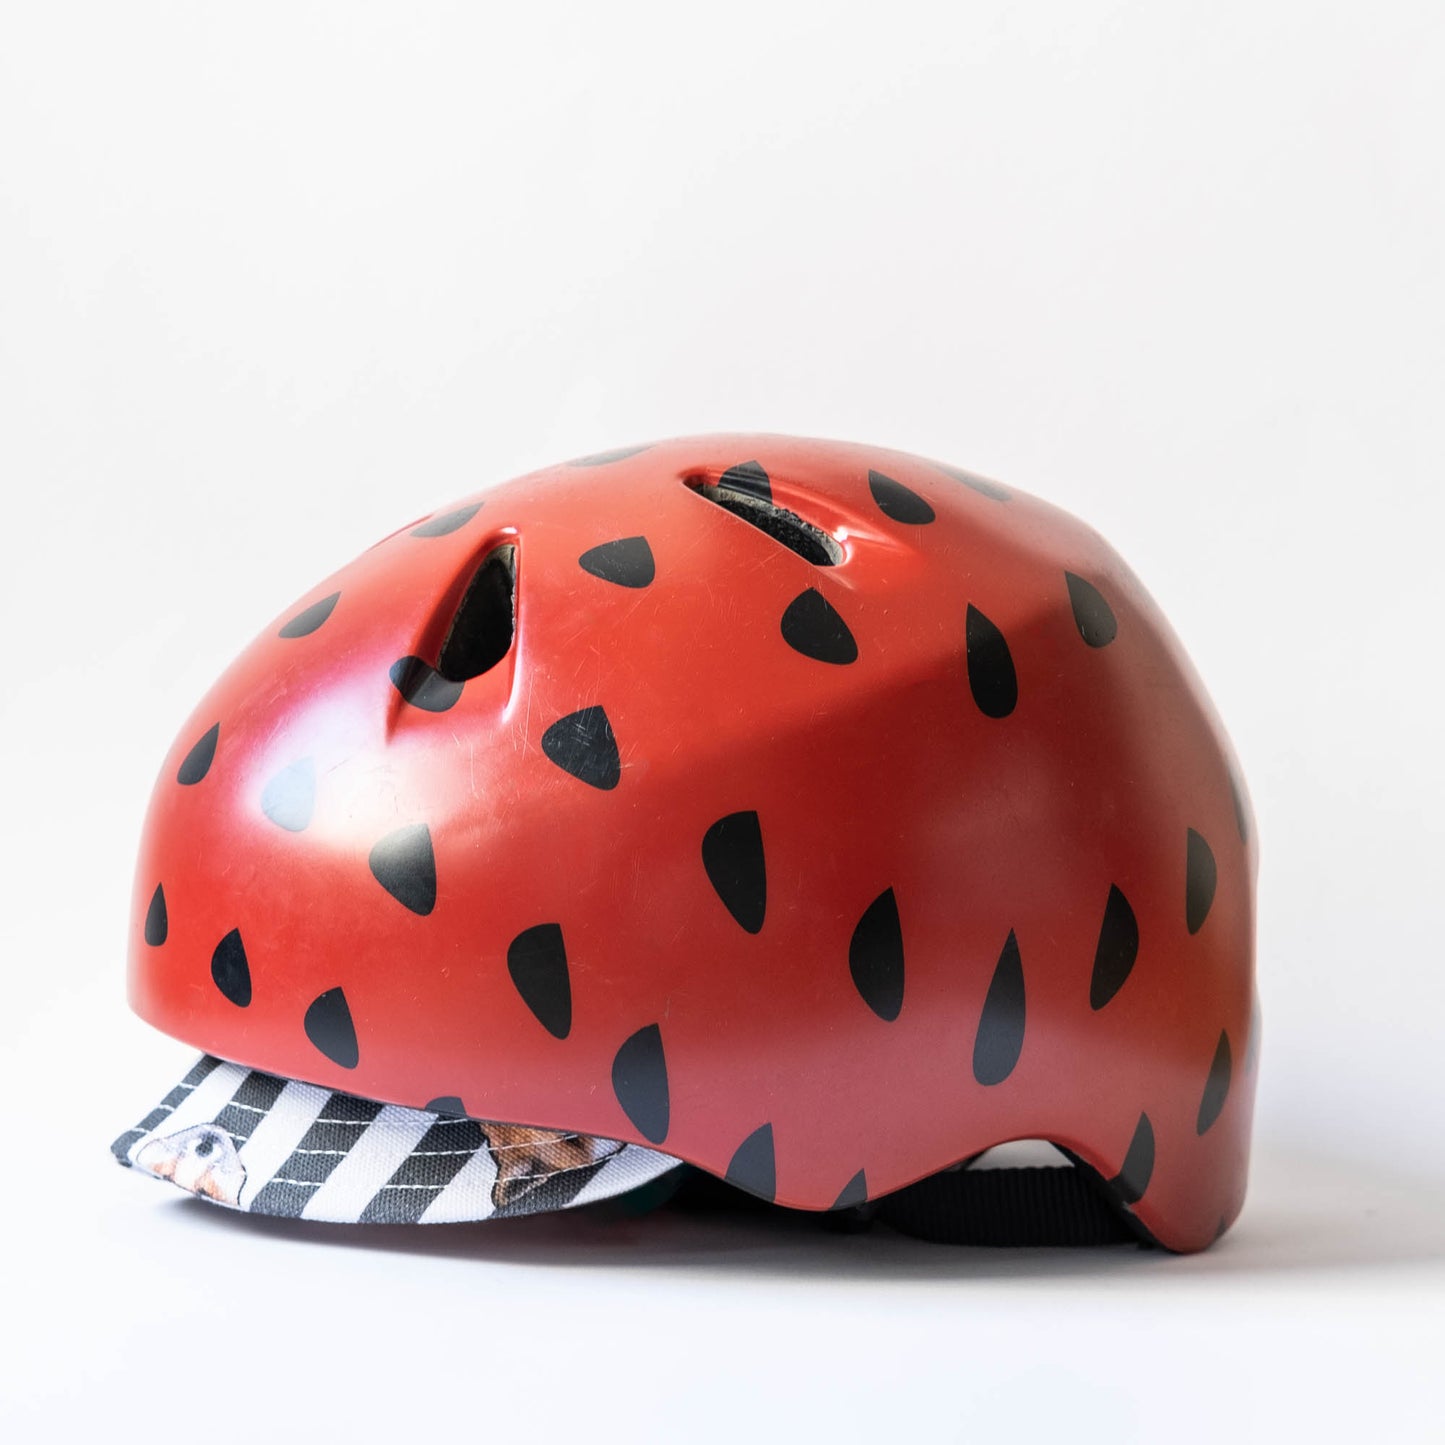 Fox bike cap with helmet